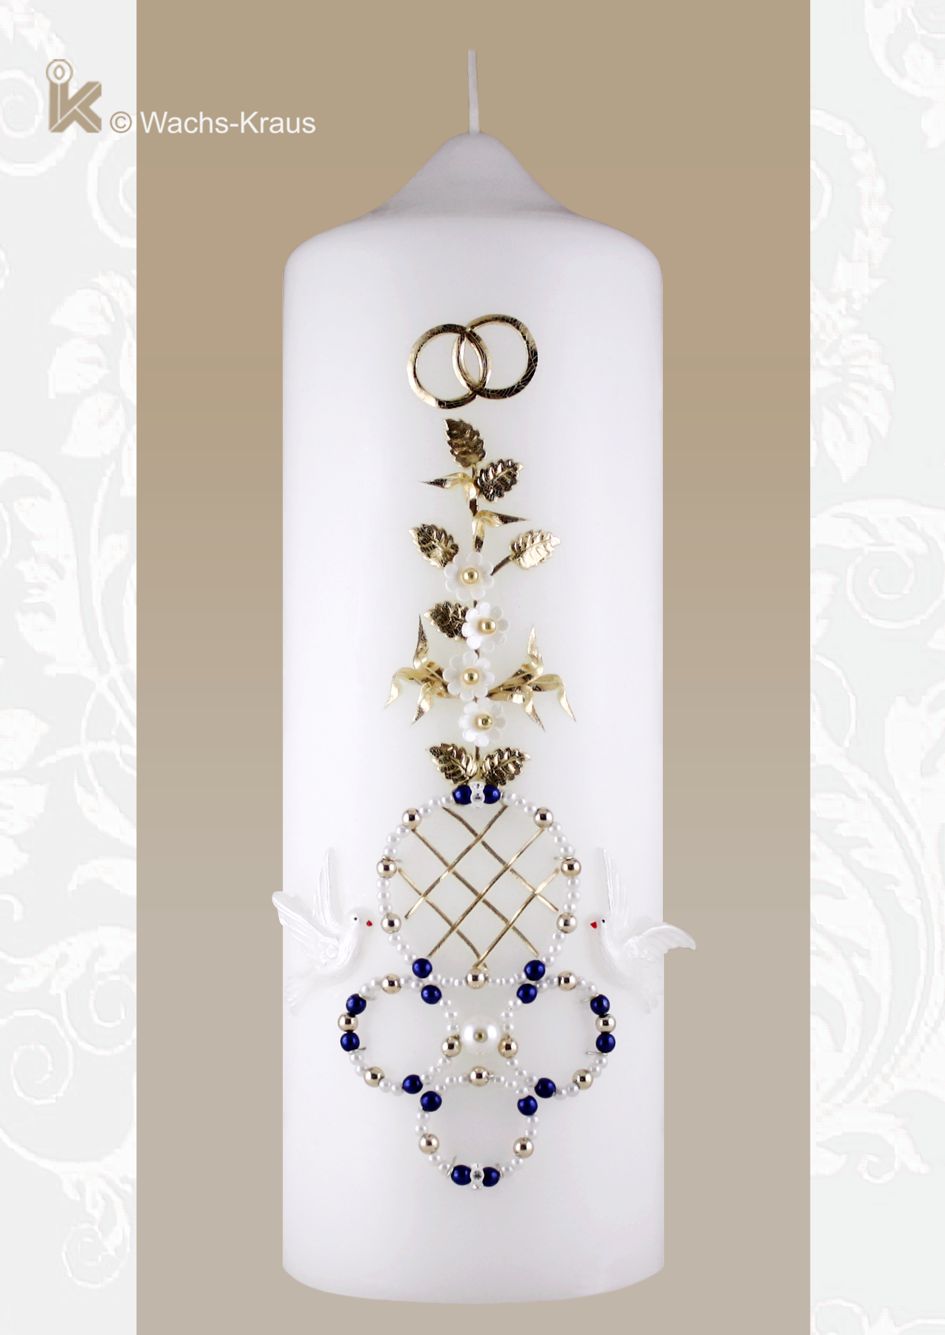 Eine wunderbar reich verzierte, Hochzeitskerze mit der fein gearbeiteten Blumenranke, weißen Blüten, goldenen Blättern, goldenen Ringe, Tauben 